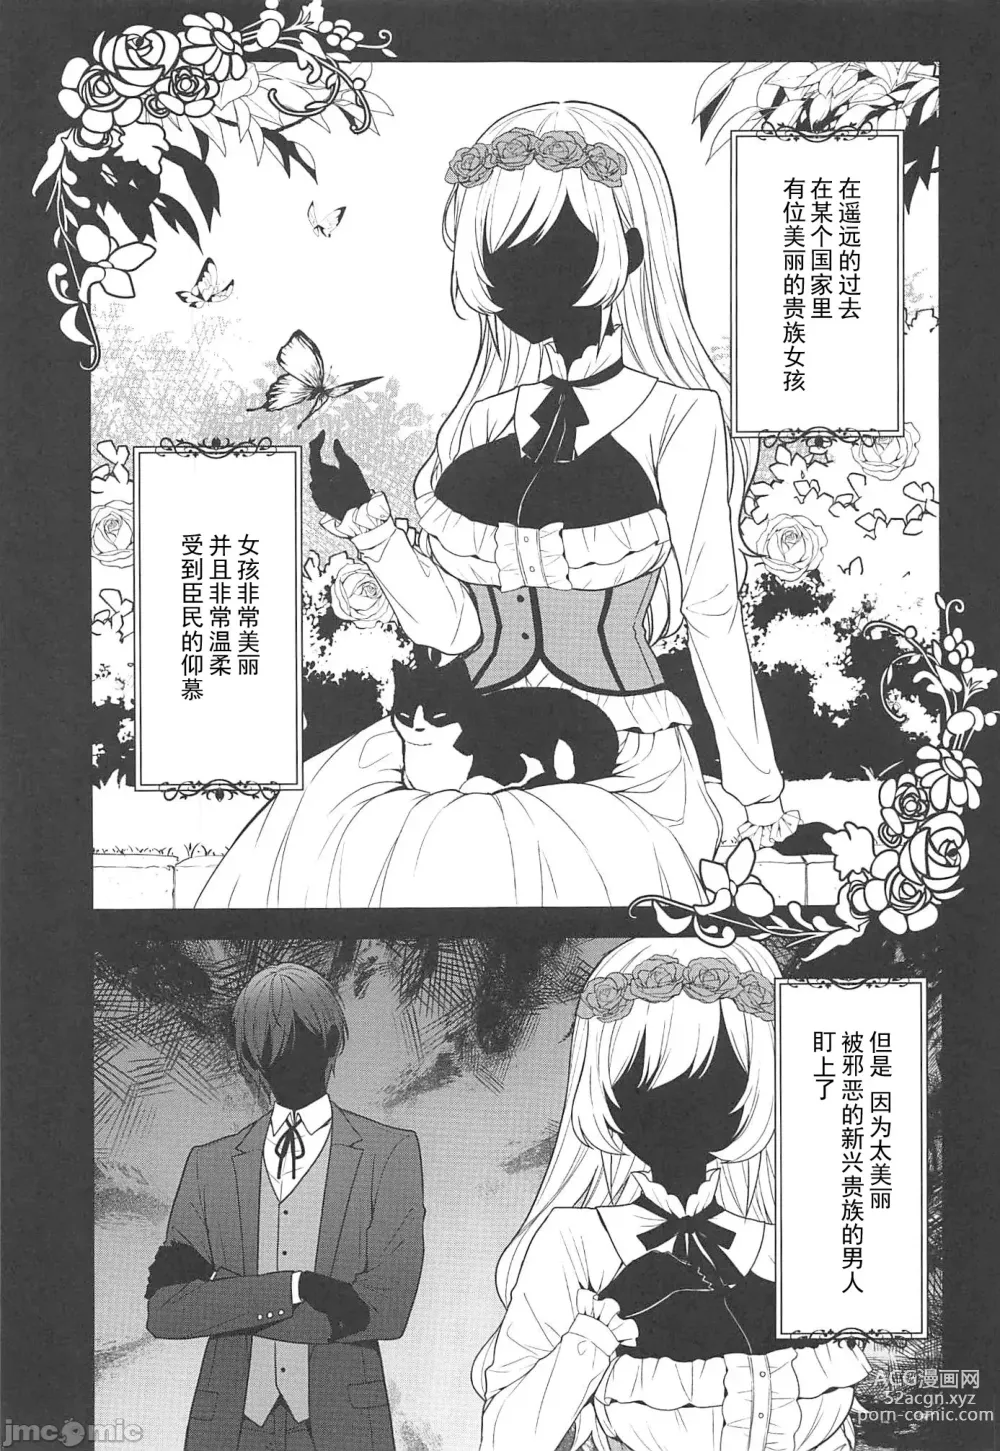 Page 2 of doujinshi 隷嬢の小夜曲第二楽章